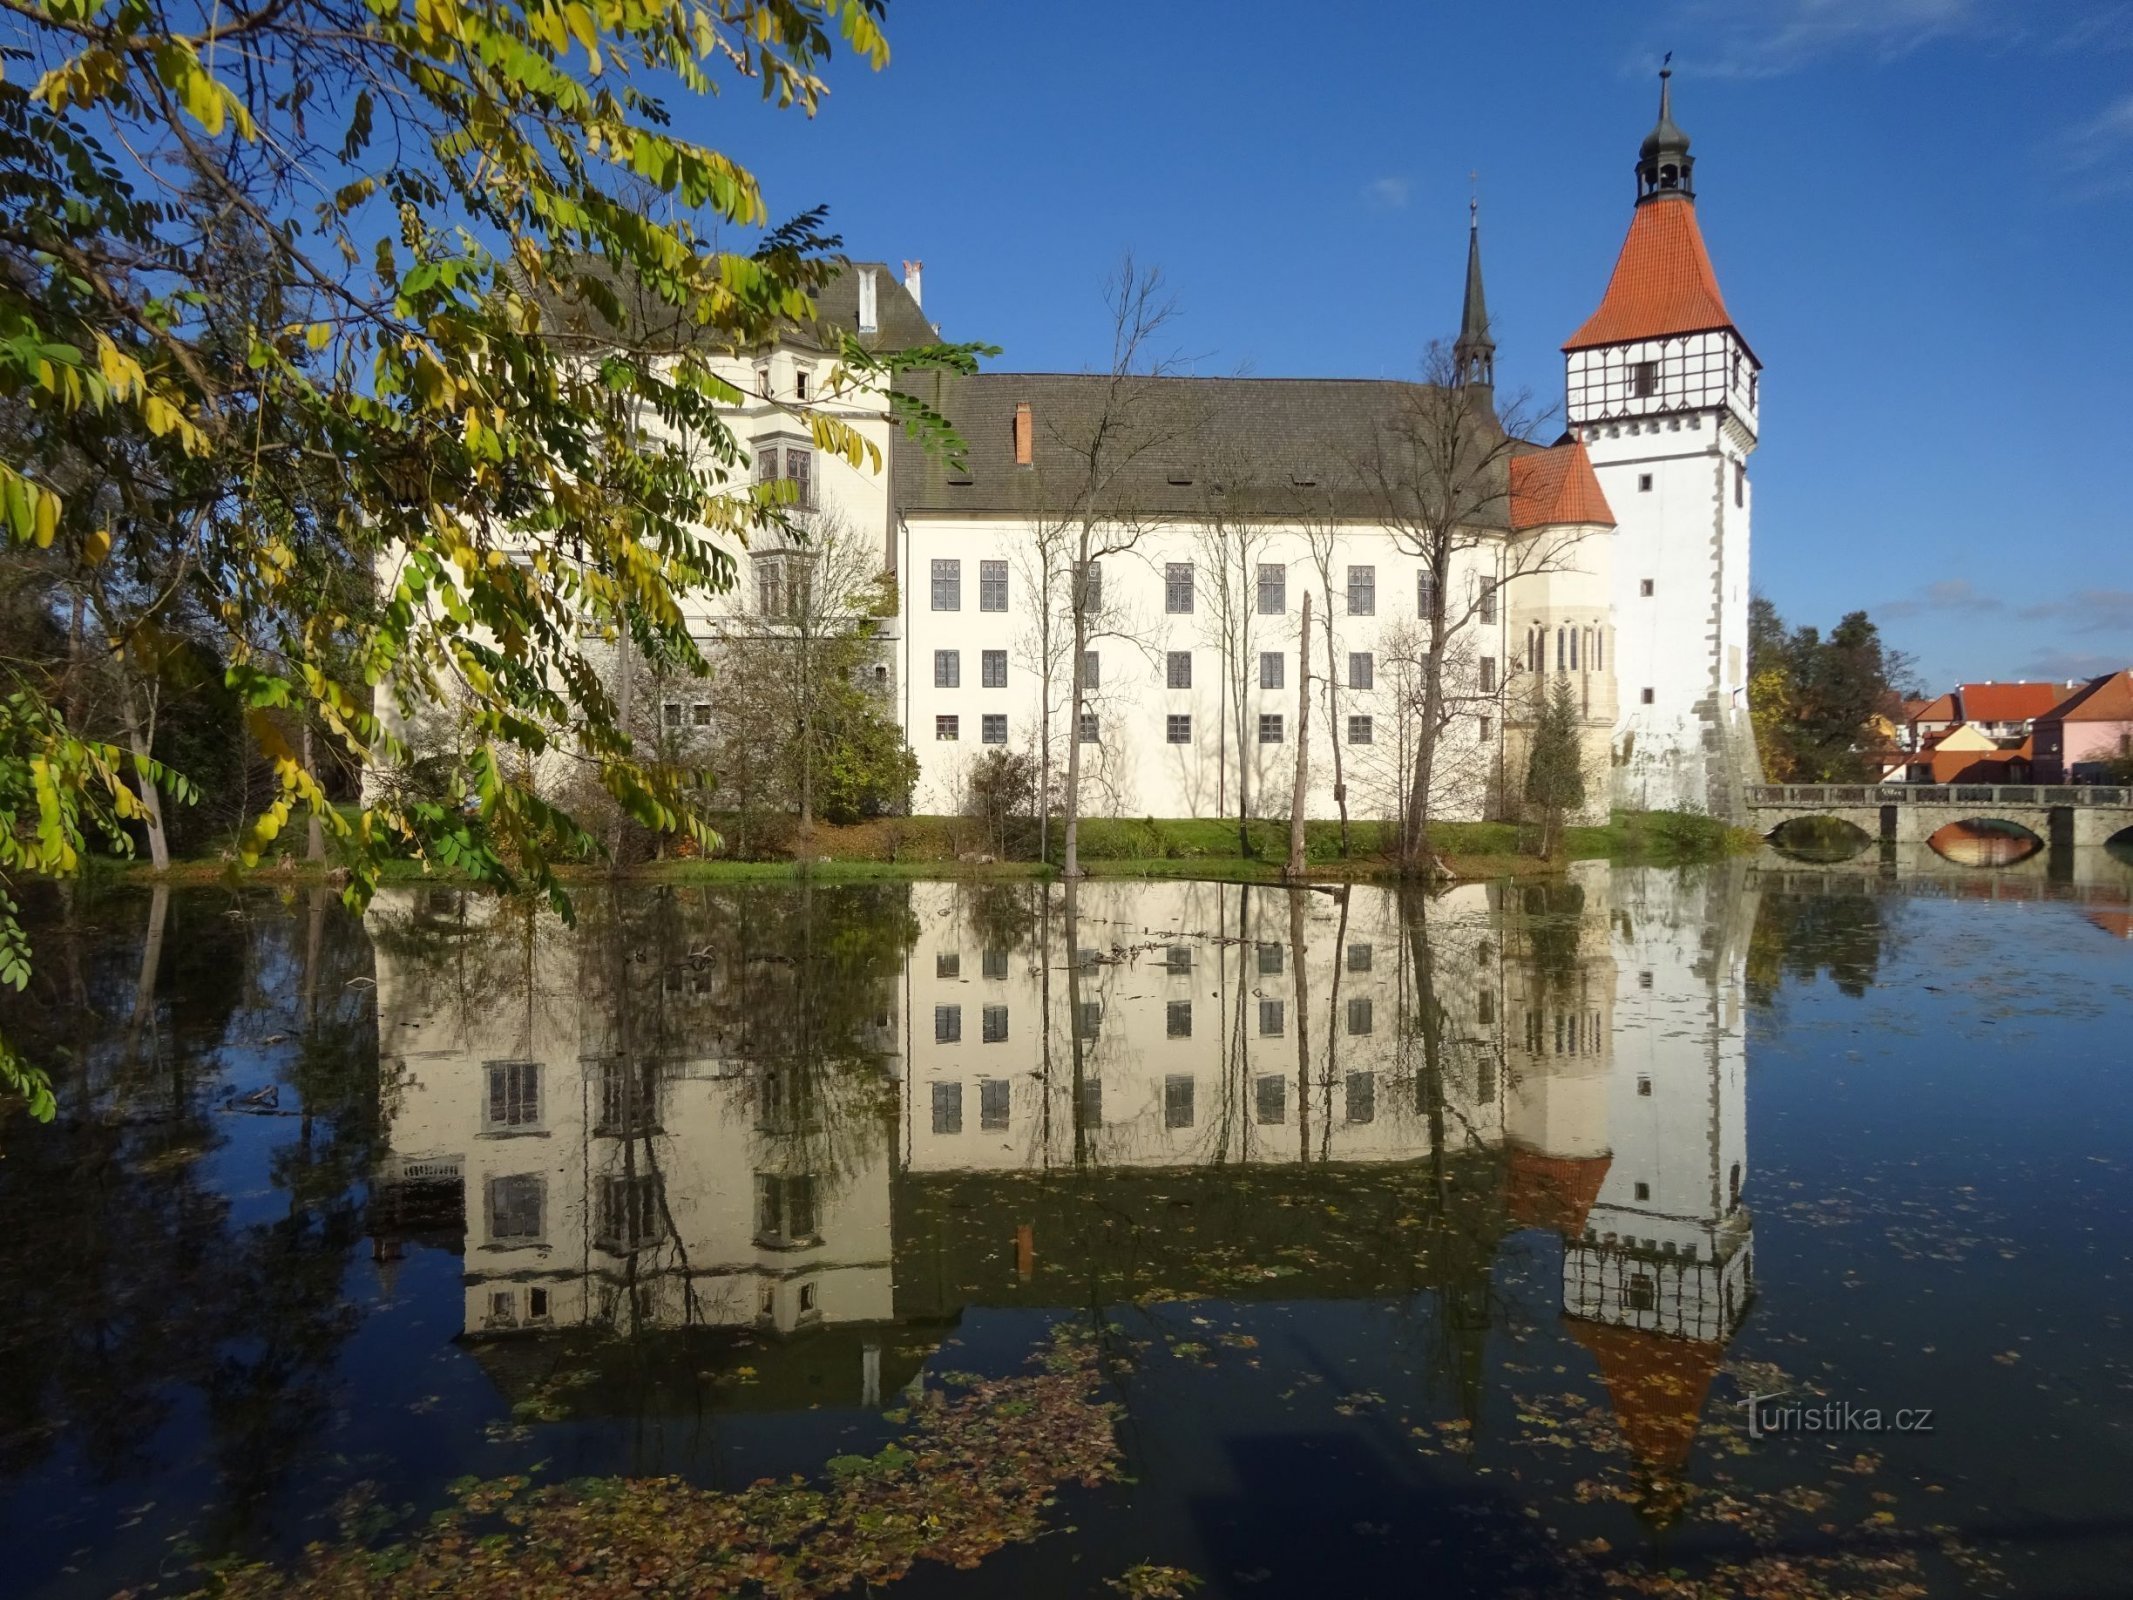 Blatná - kasteel, kasteelpark, braak- en berkenbomen